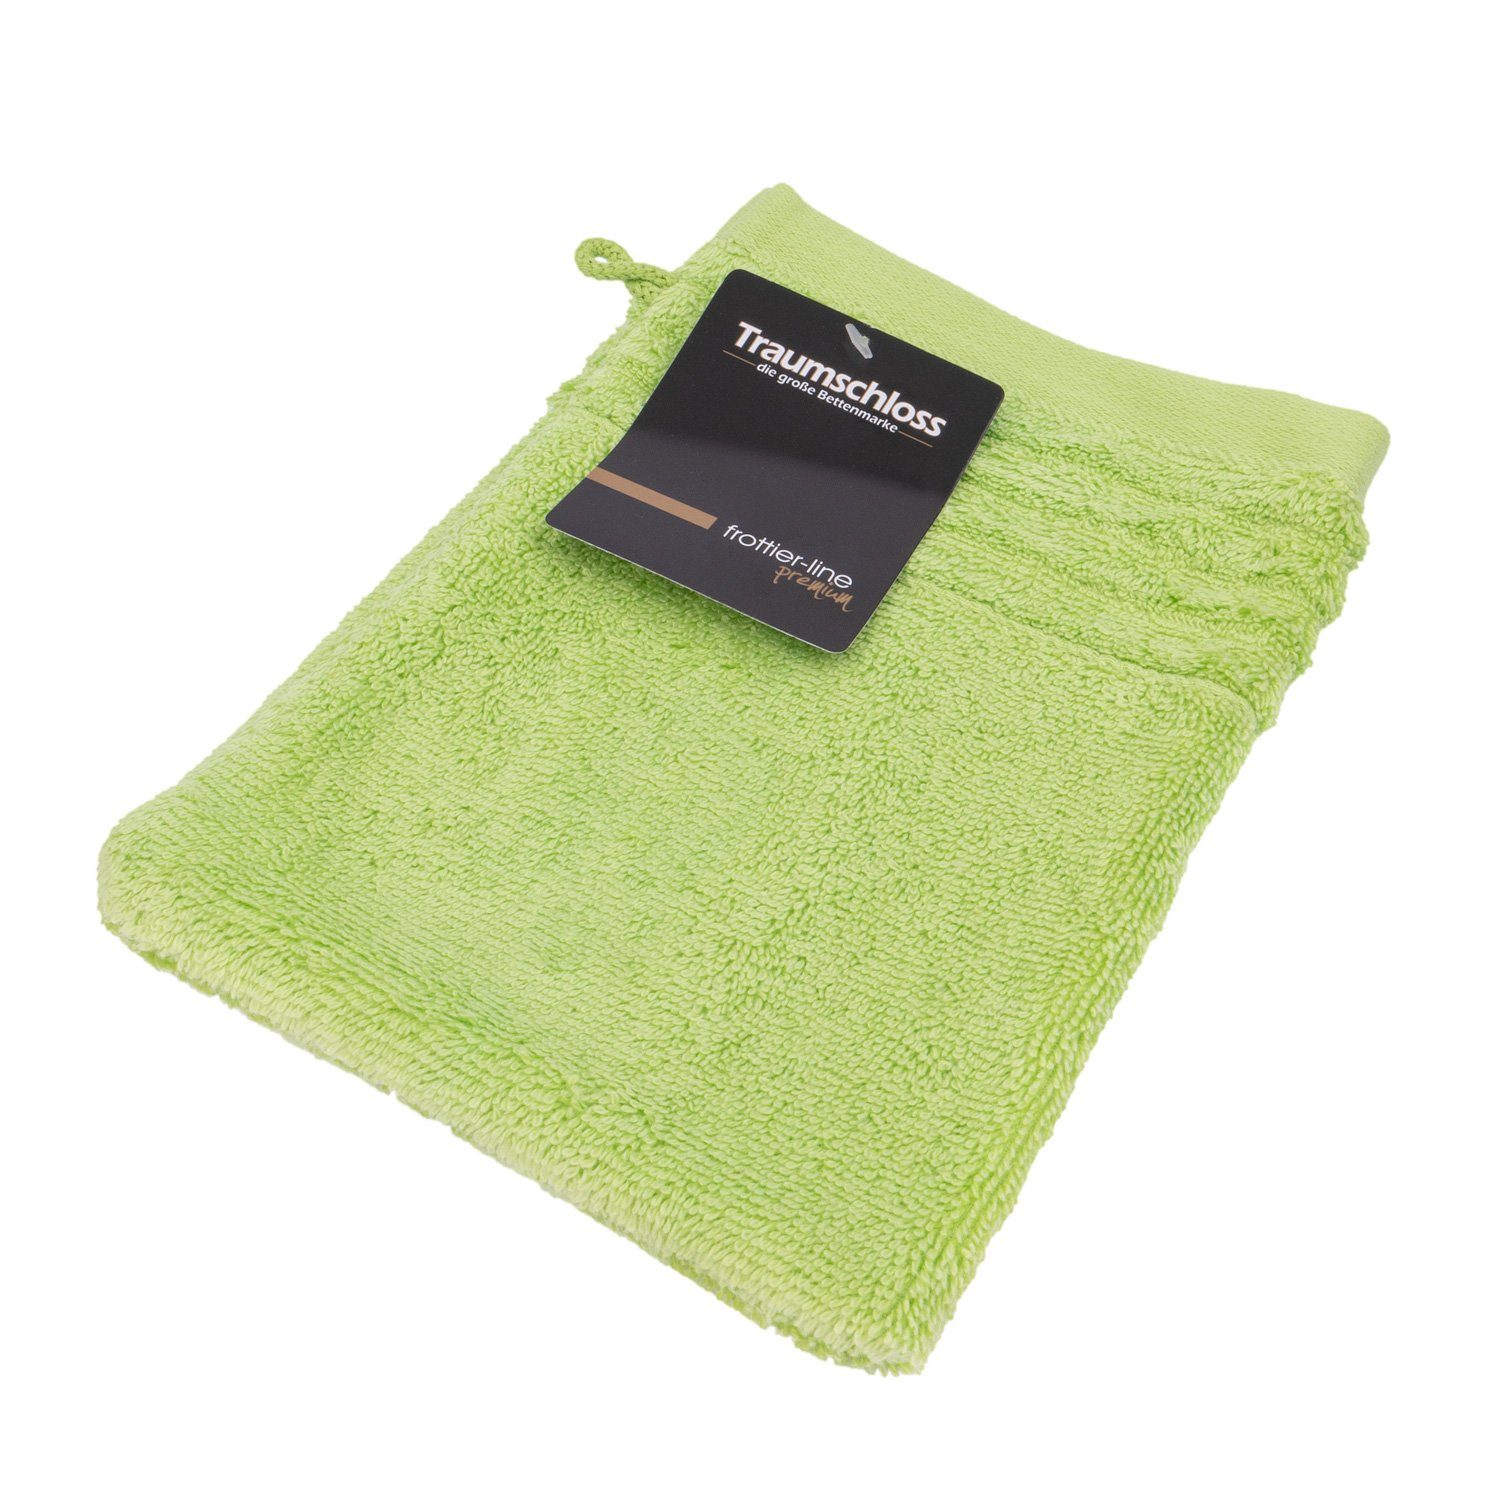 Traumschloss Waschlappen Premium-Line grün 100% amerikanische Baumwolle (1-tlg), 600g/m² mit Supima